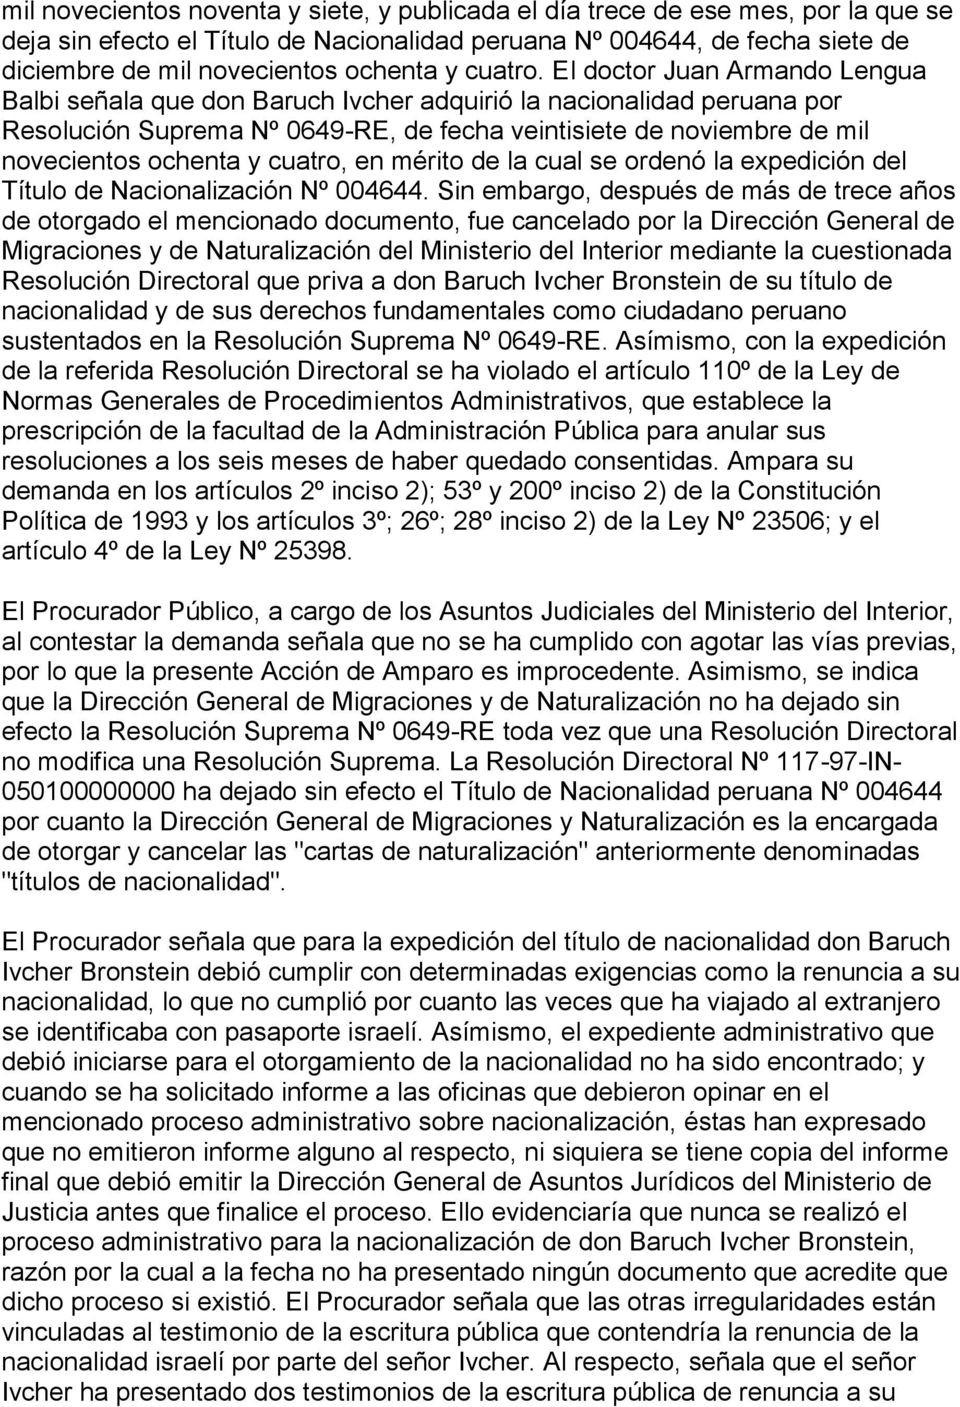 El doctor Juan Armando Lengua Balbi señala que don Baruch Ivcher adquirió la nacionalidad peruana por Resolución Suprema Nº 0649-RE, de fecha veintisiete de noviembre de mil novecientos ochenta y